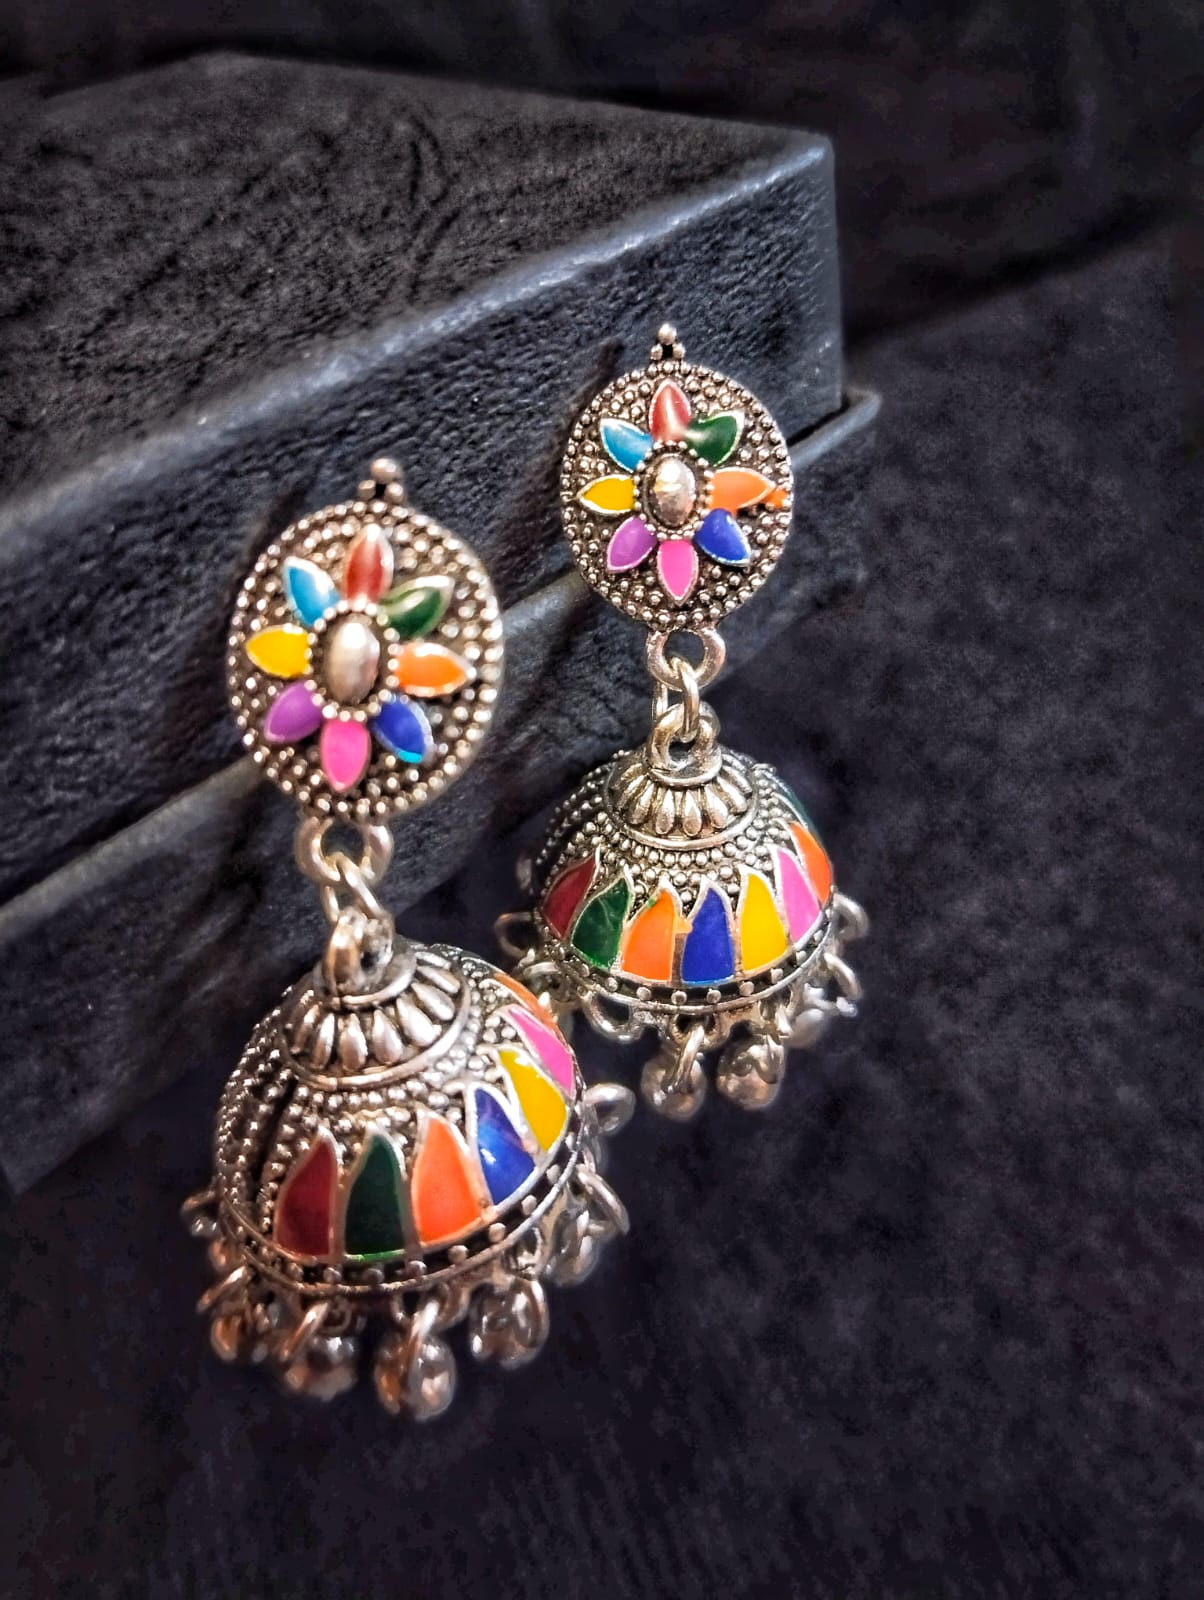 Vibrant Multicolored Meena Kaari Jhumkis with Ghungroos - Traditional Pakistani Earrings